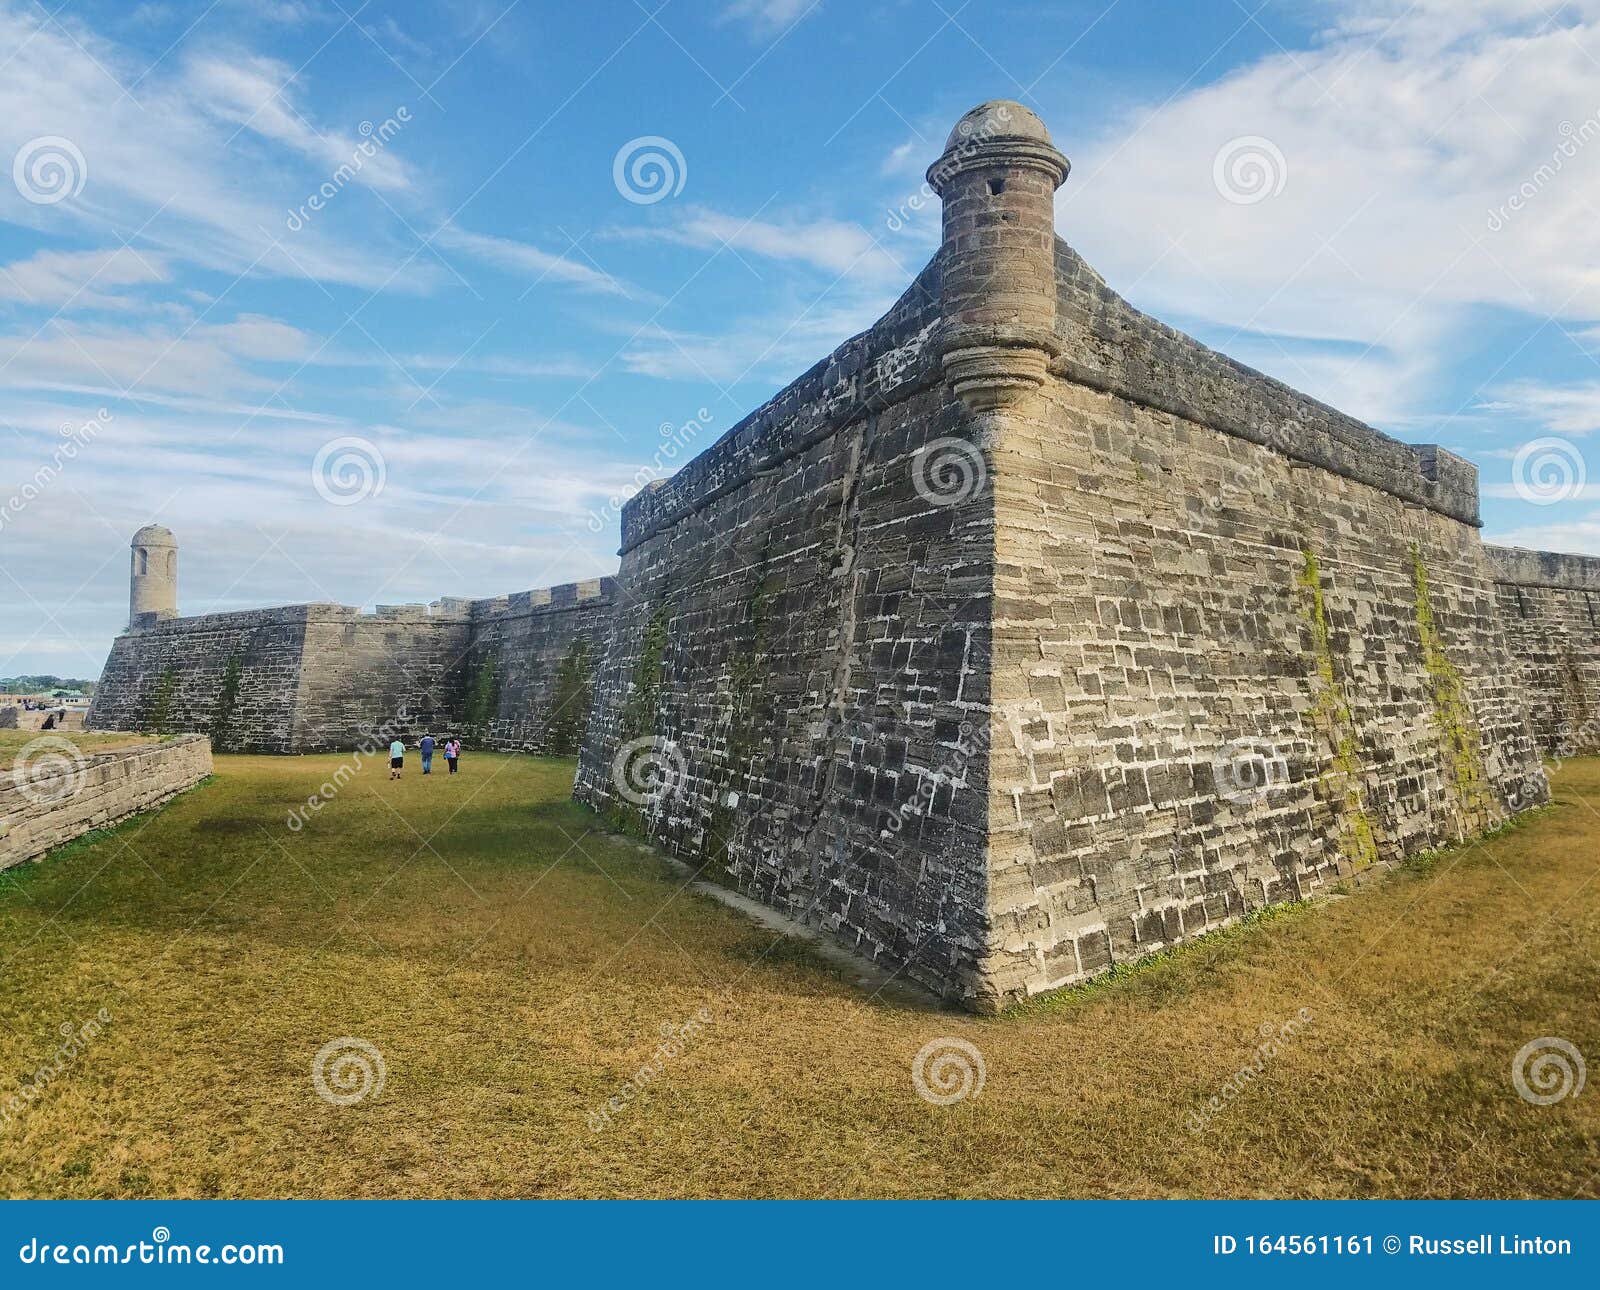 castillo de san marcos national park in saint augustine, florida